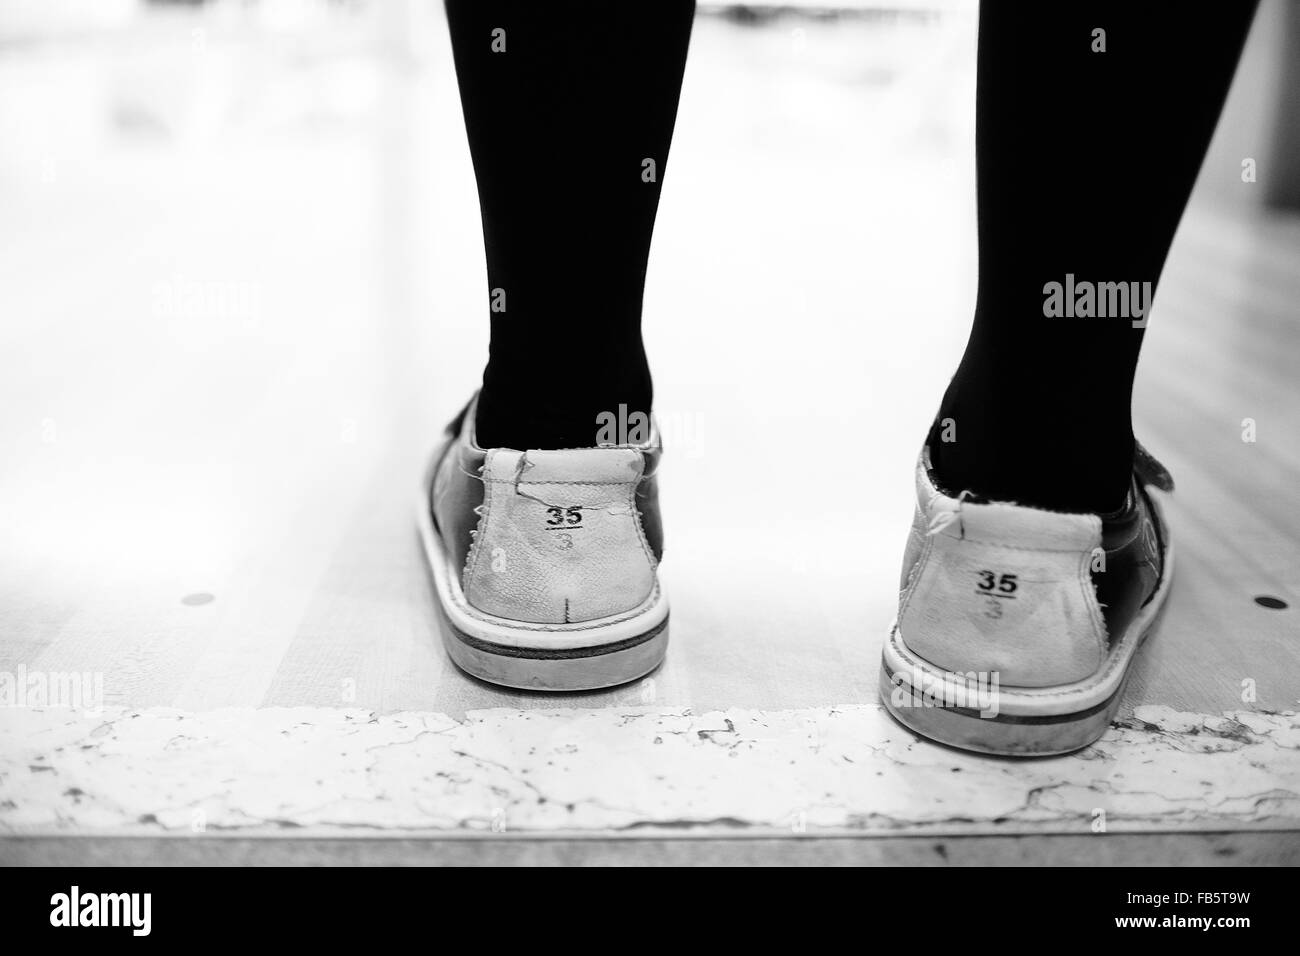 Girl's pieds de bowling chaussures dans un bowling. Taille Euro 35, UK 3. Banque D'Images